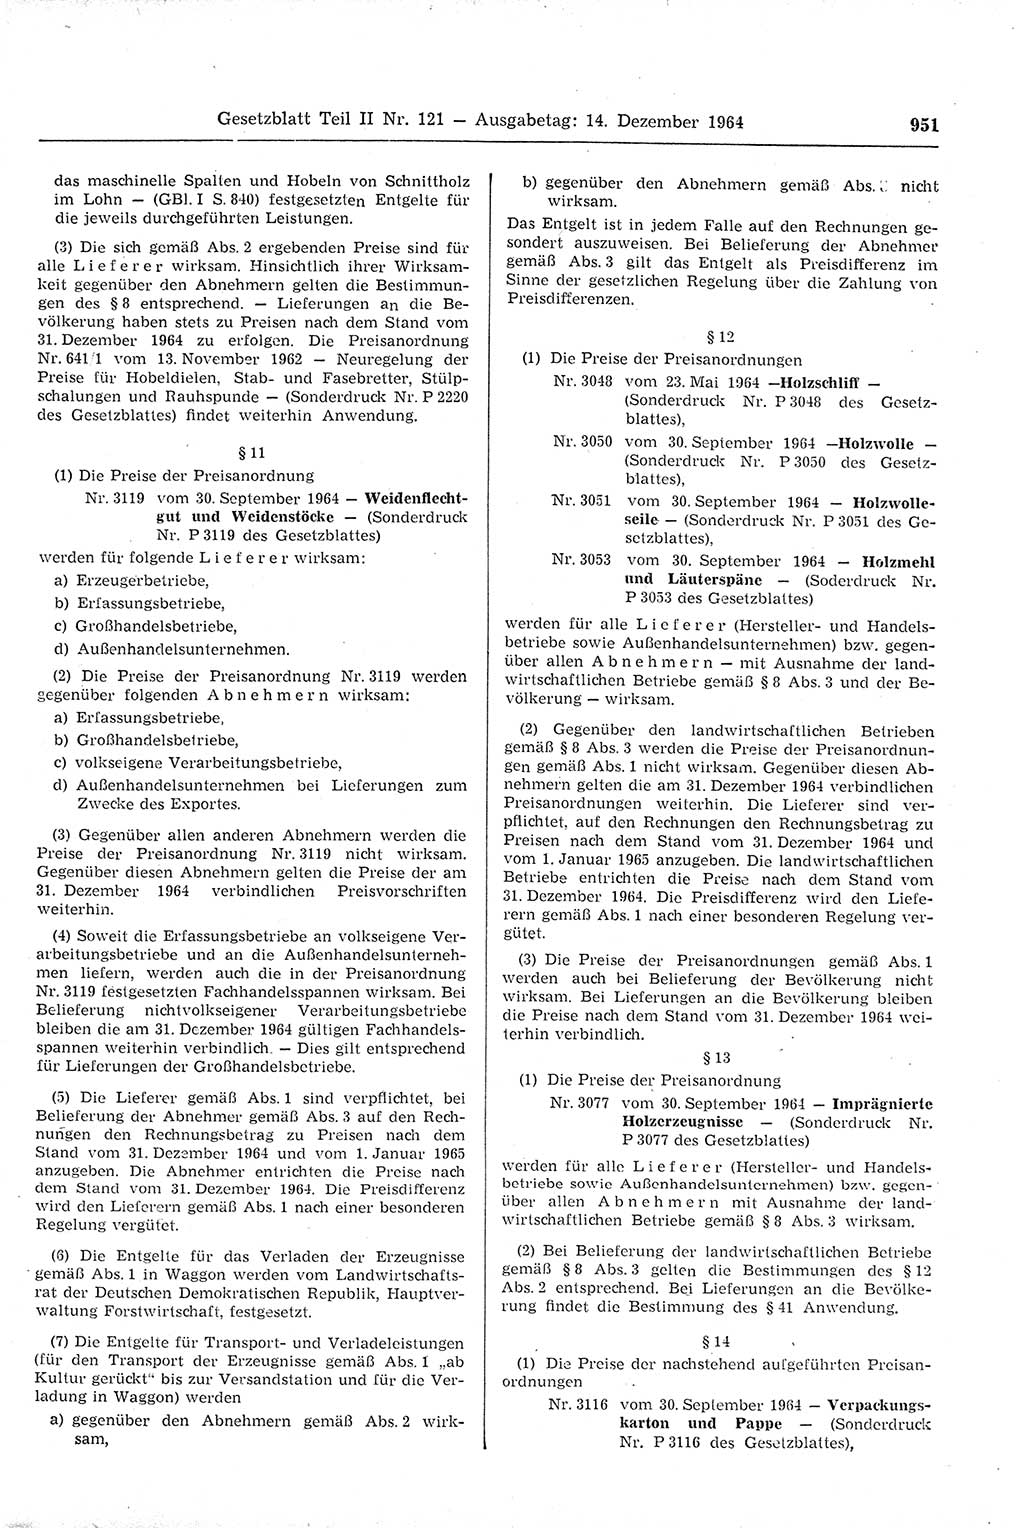 Gesetzblatt (GBl.) der Deutschen Demokratischen Republik (DDR) Teil ⅠⅠ 1964, Seite 951 (GBl. DDR ⅠⅠ 1964, S. 951)